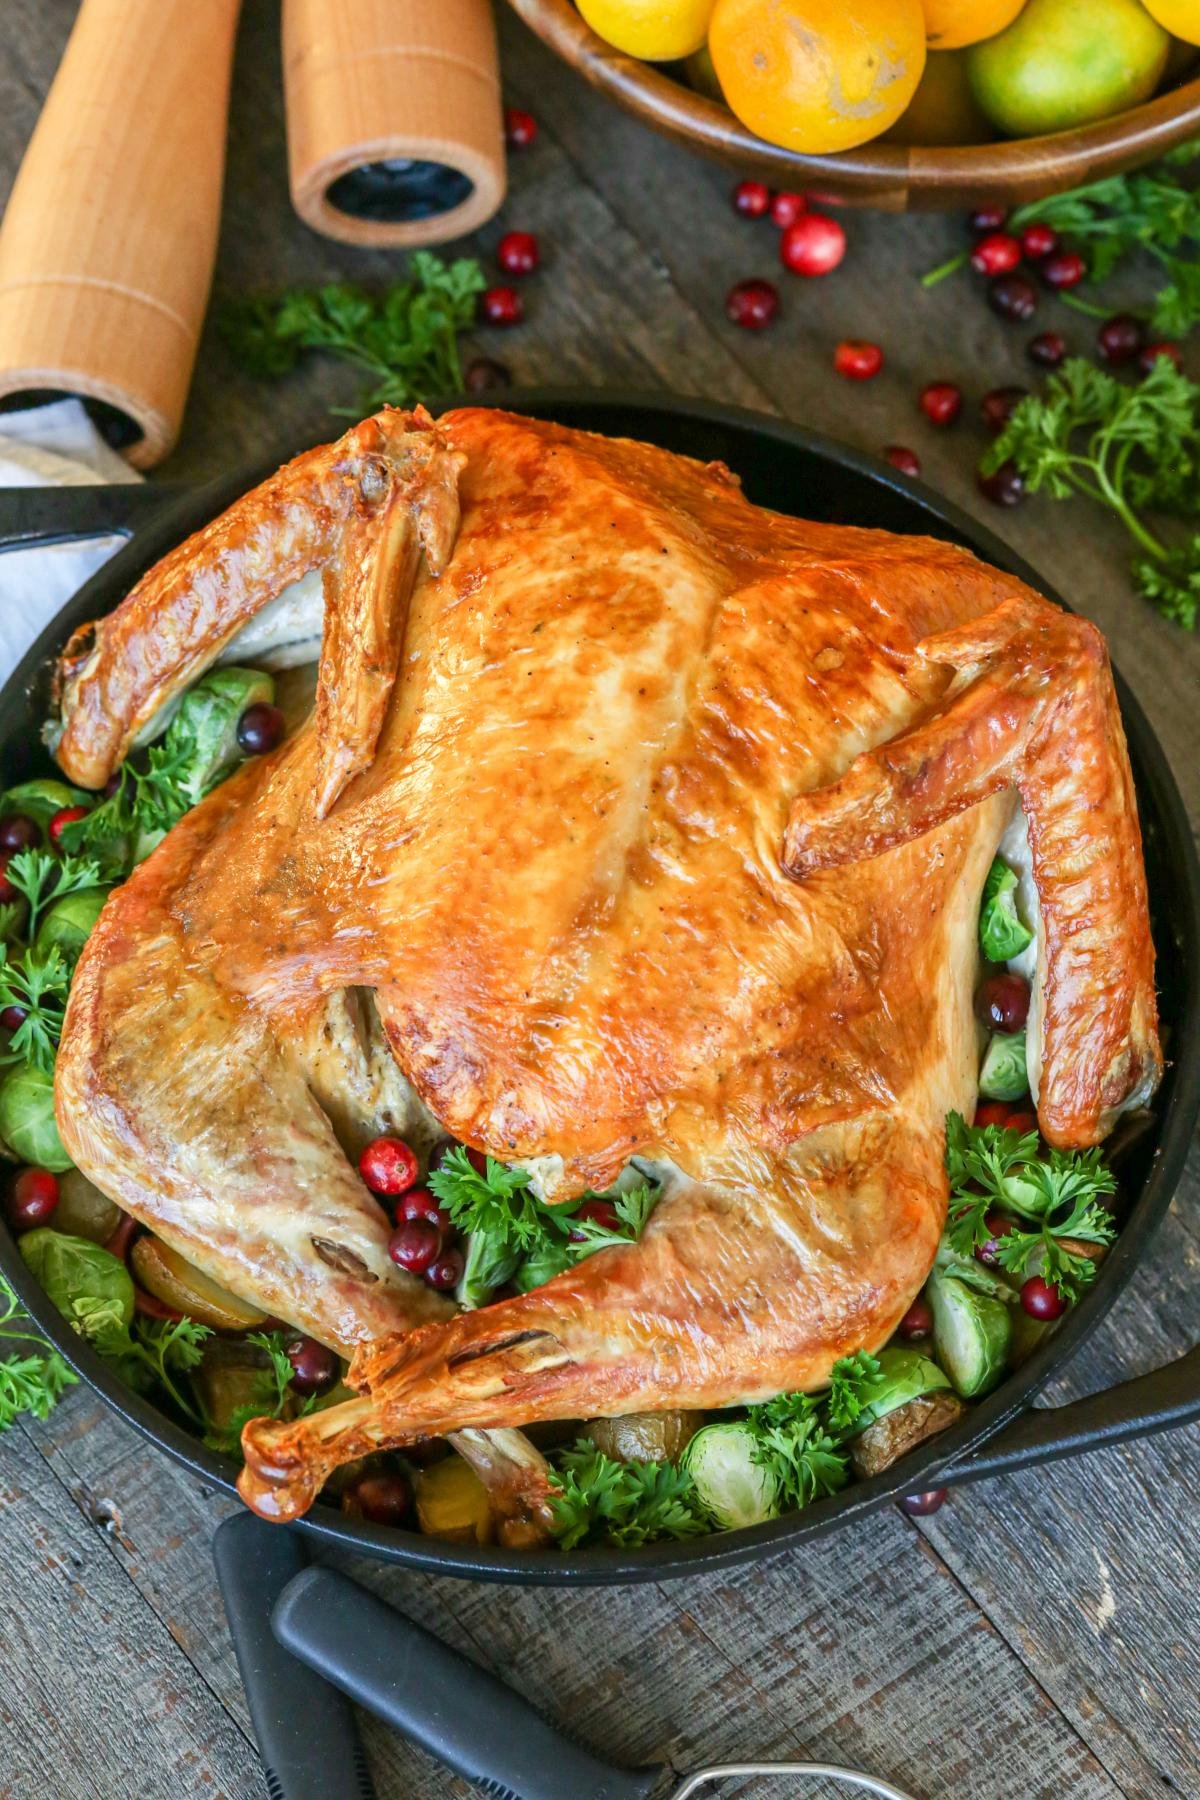 easiest-roasted-turkey-recipe-ever-momsdish